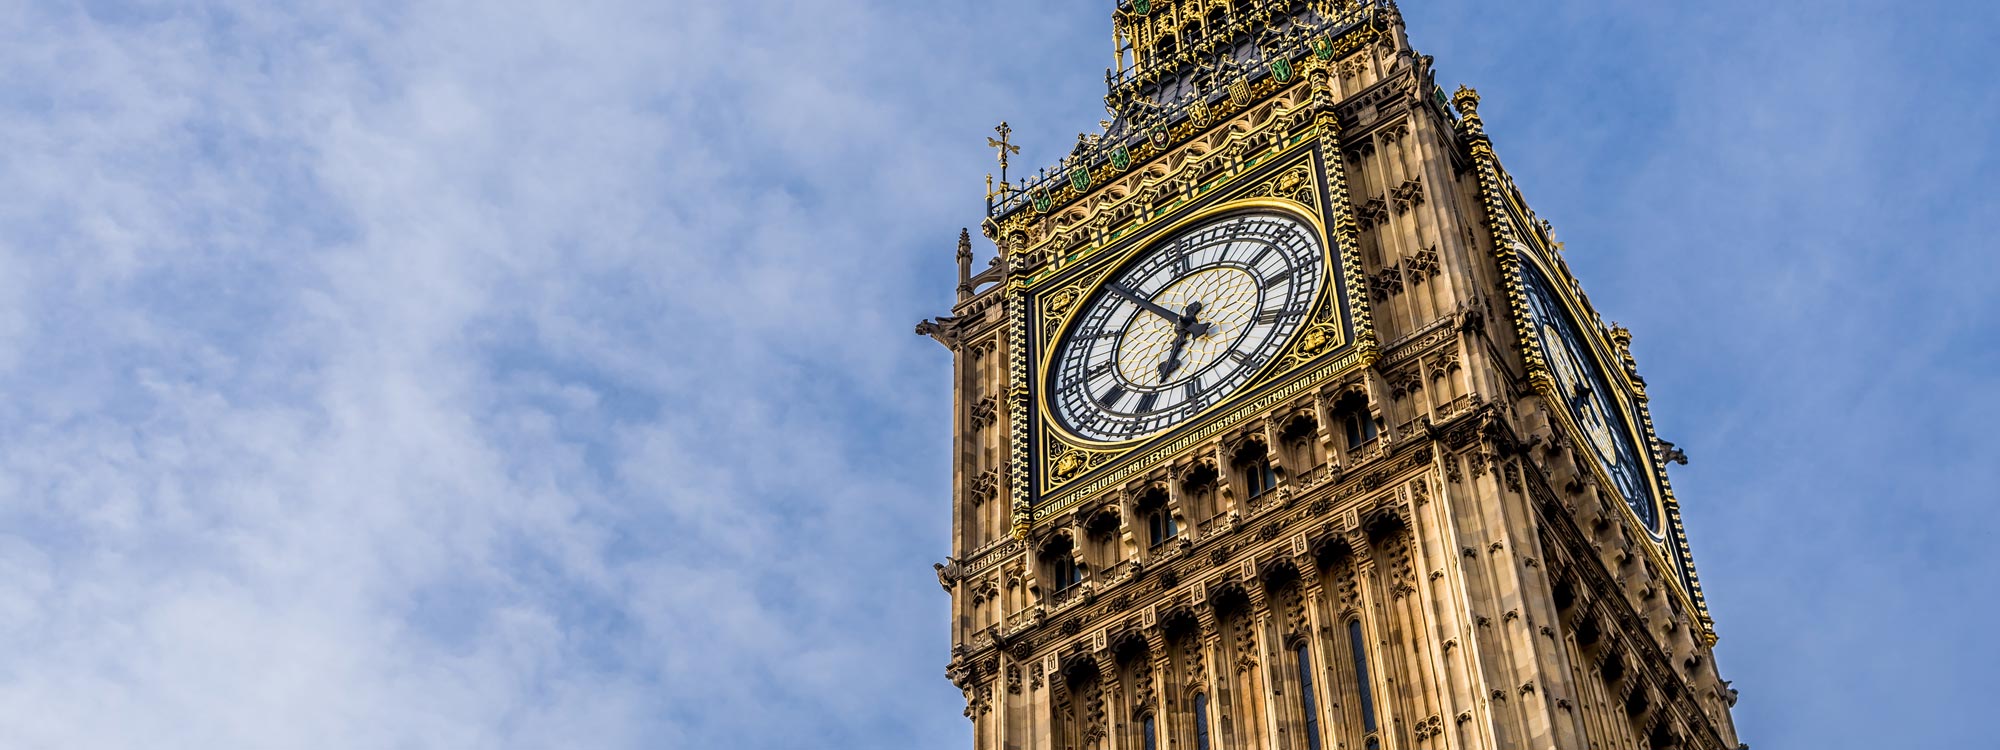 Big Ben - Londoner Wahrzeichen und die unglückselige Geschichte der Glocke